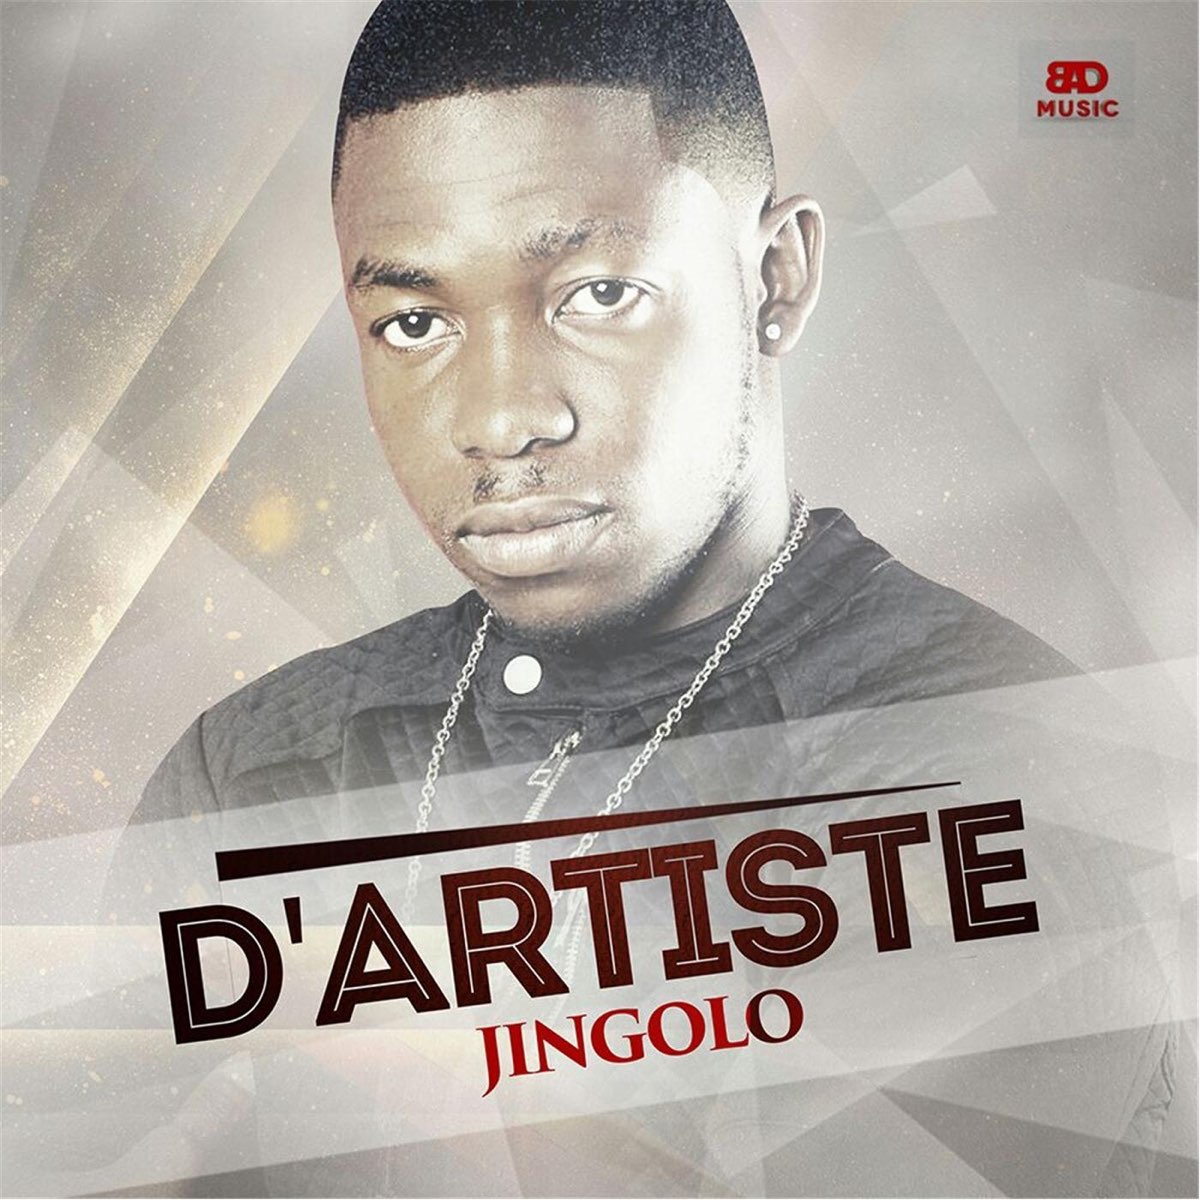 Jingolo - Single by D'artiste on Apple Music